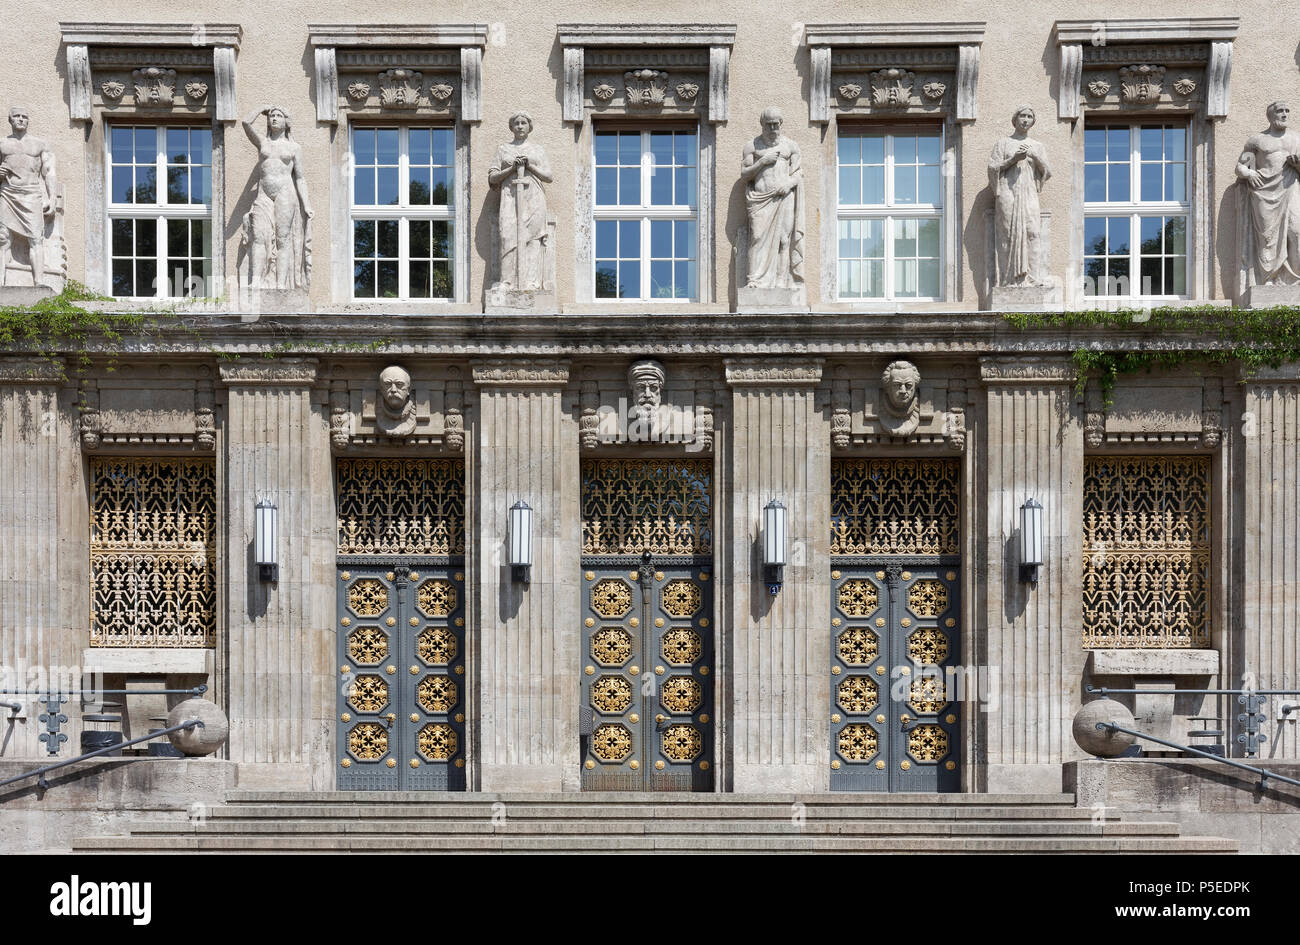 Portal con bustos de Bismarck, Gutenberg y Goethe, Biblioteca Nacional de Alemania, fundada en 1914, Leipzig, Sajonia, Alemania Foto de stock